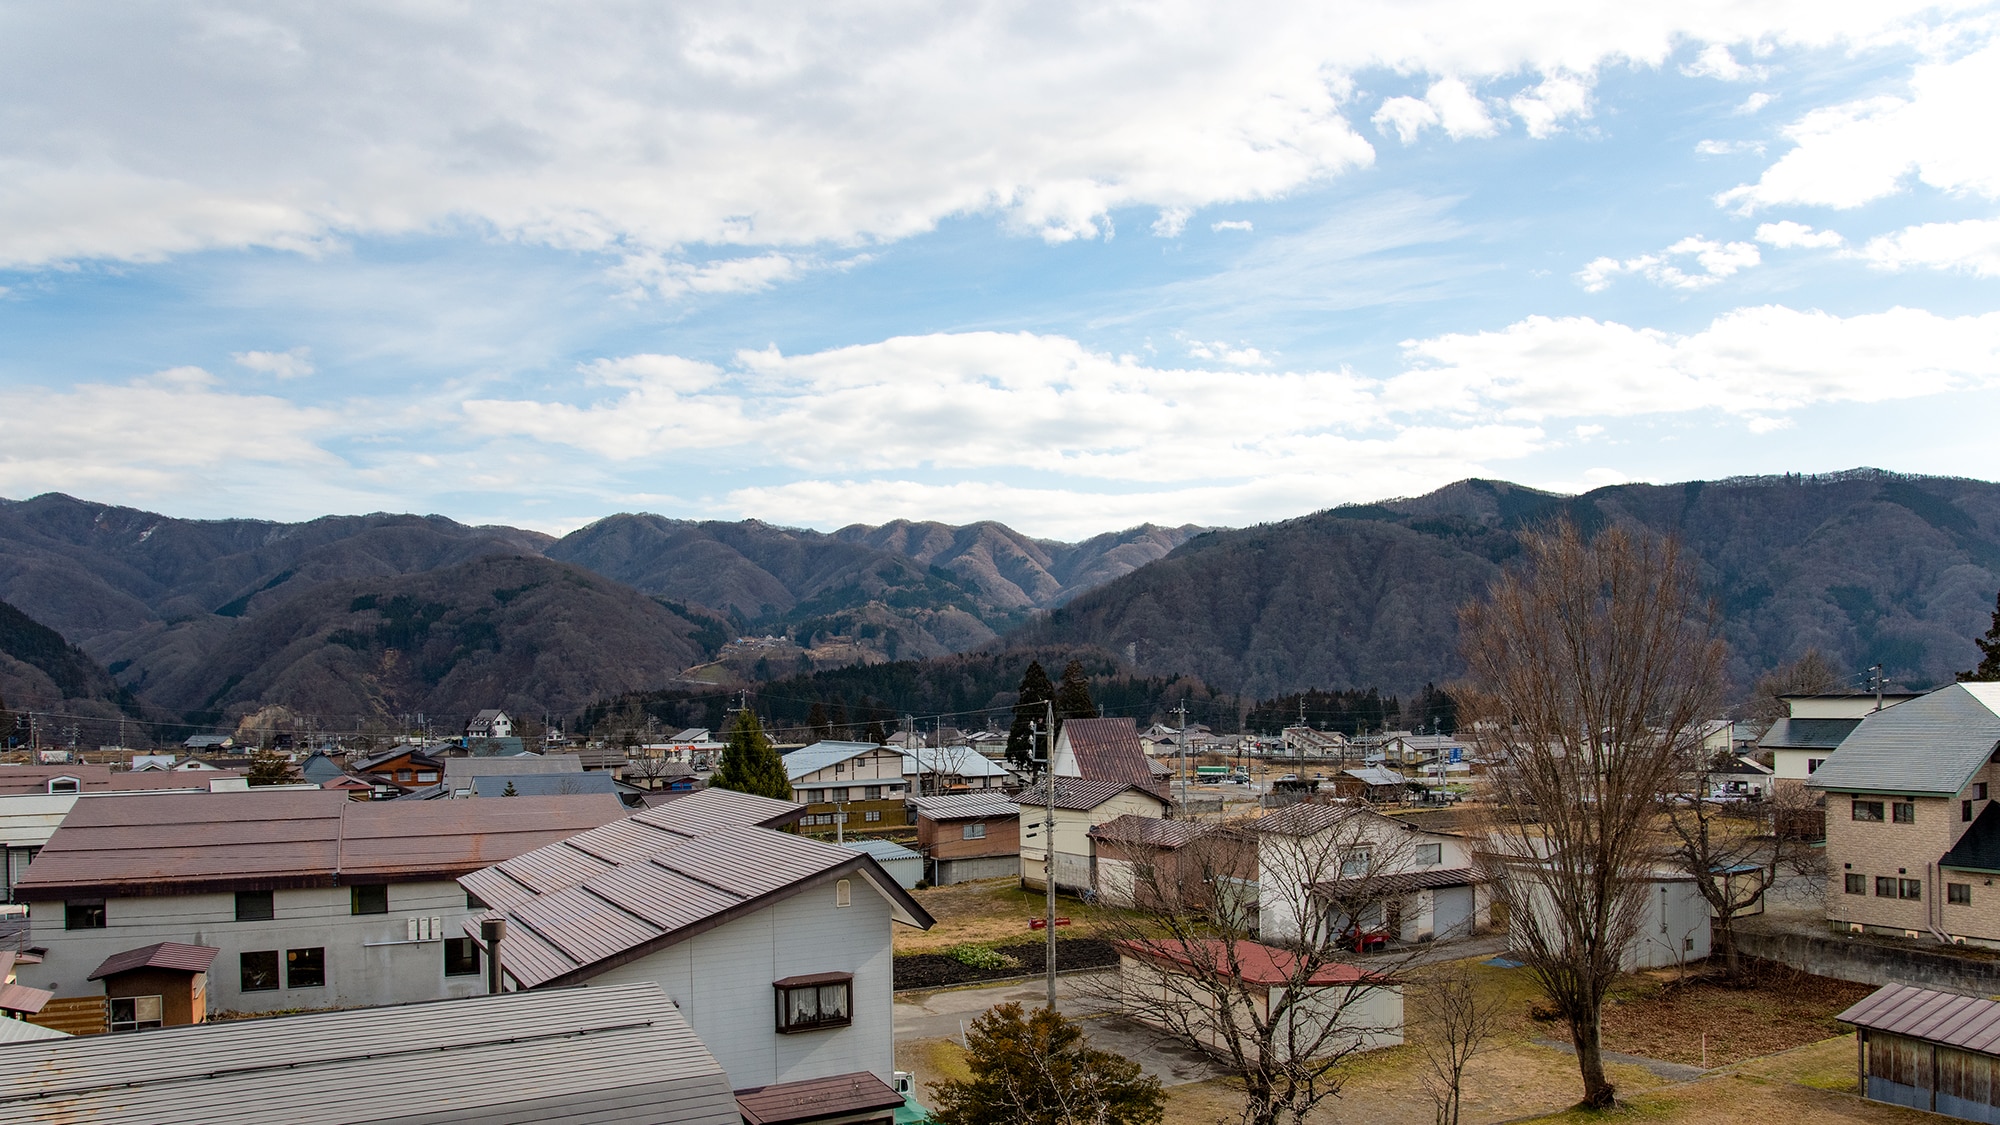 * วิว (ฝั่งห้องพักสไตล์ญี่ปุ่นของอาคารหลัก): คุณสามารถมองเห็นทัศนียภาพอันงดงามและภูเขาได้จากหน้าต่างทางด้านตะวันออก